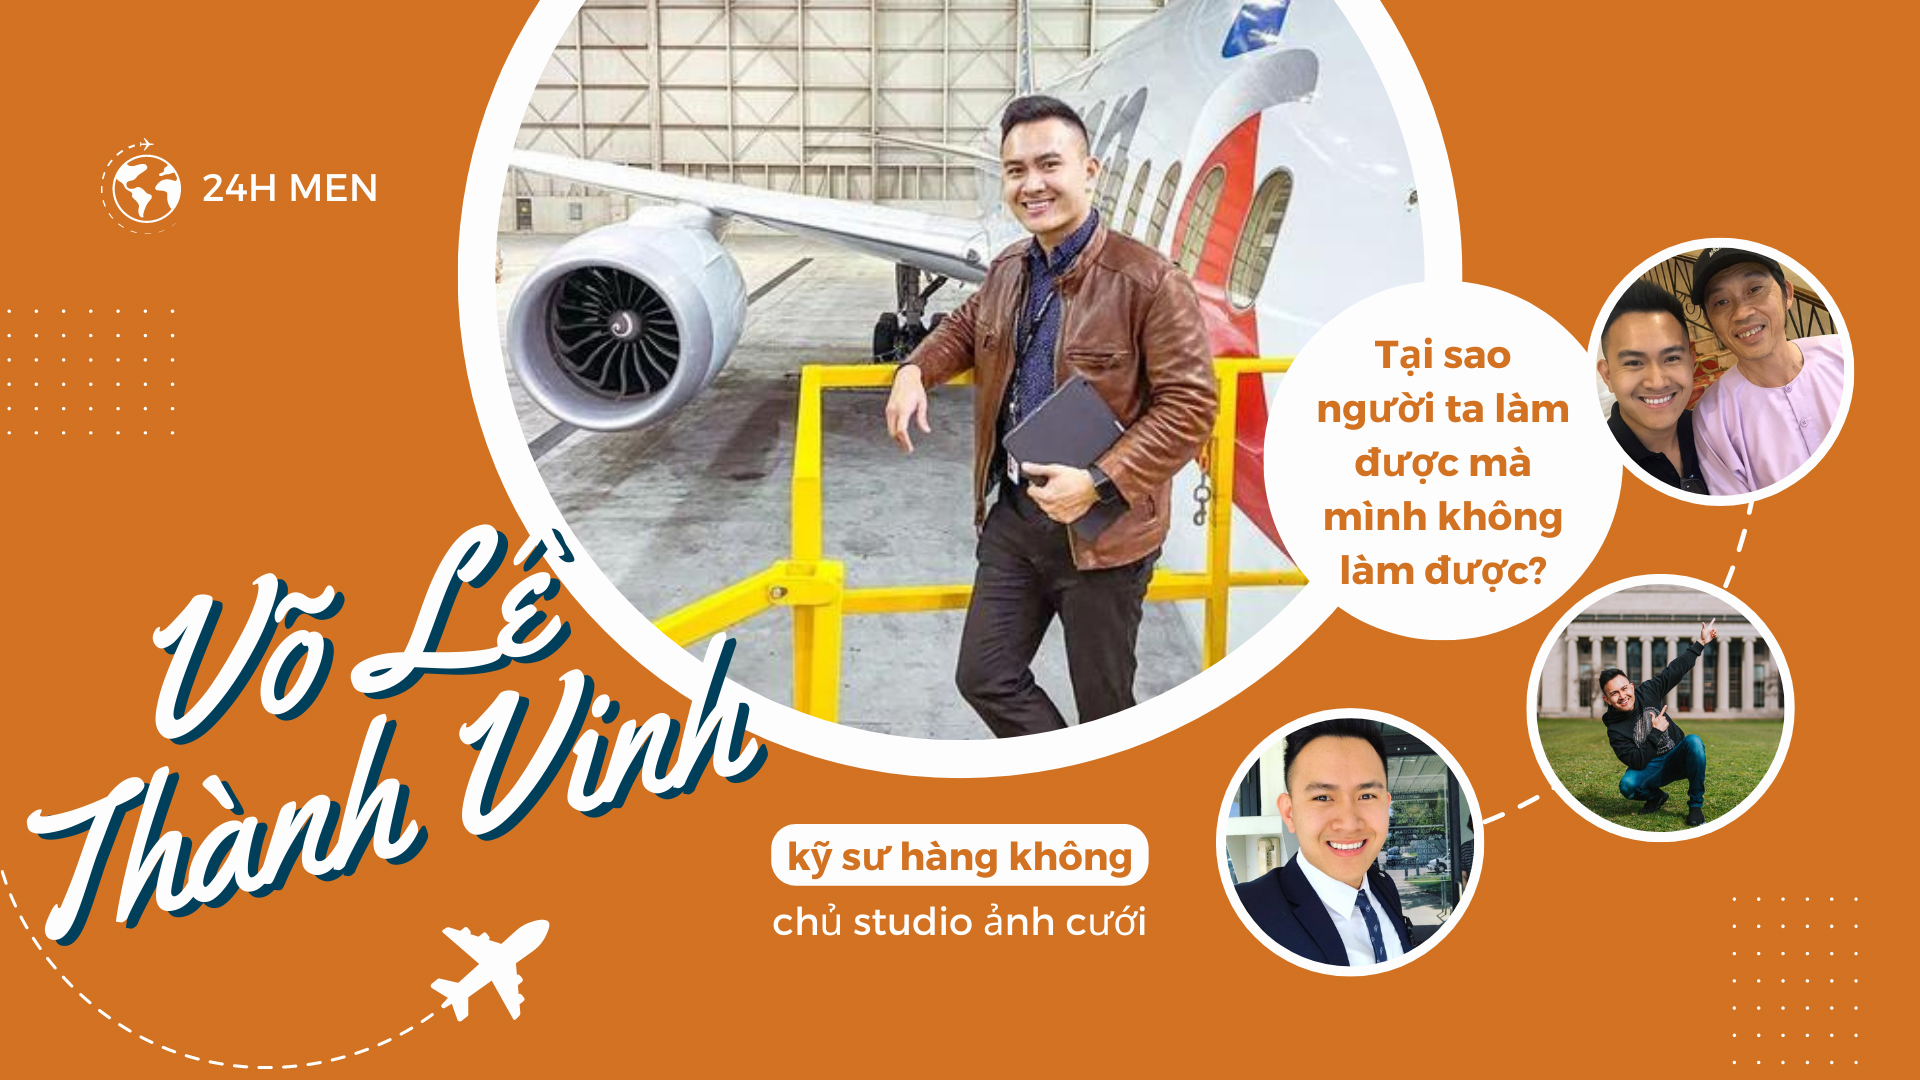 Con trai Hoài Linh: Học vấn đỉnh cao, kỹ sư hãng hàng không với mức lương “không tưởng” - 1